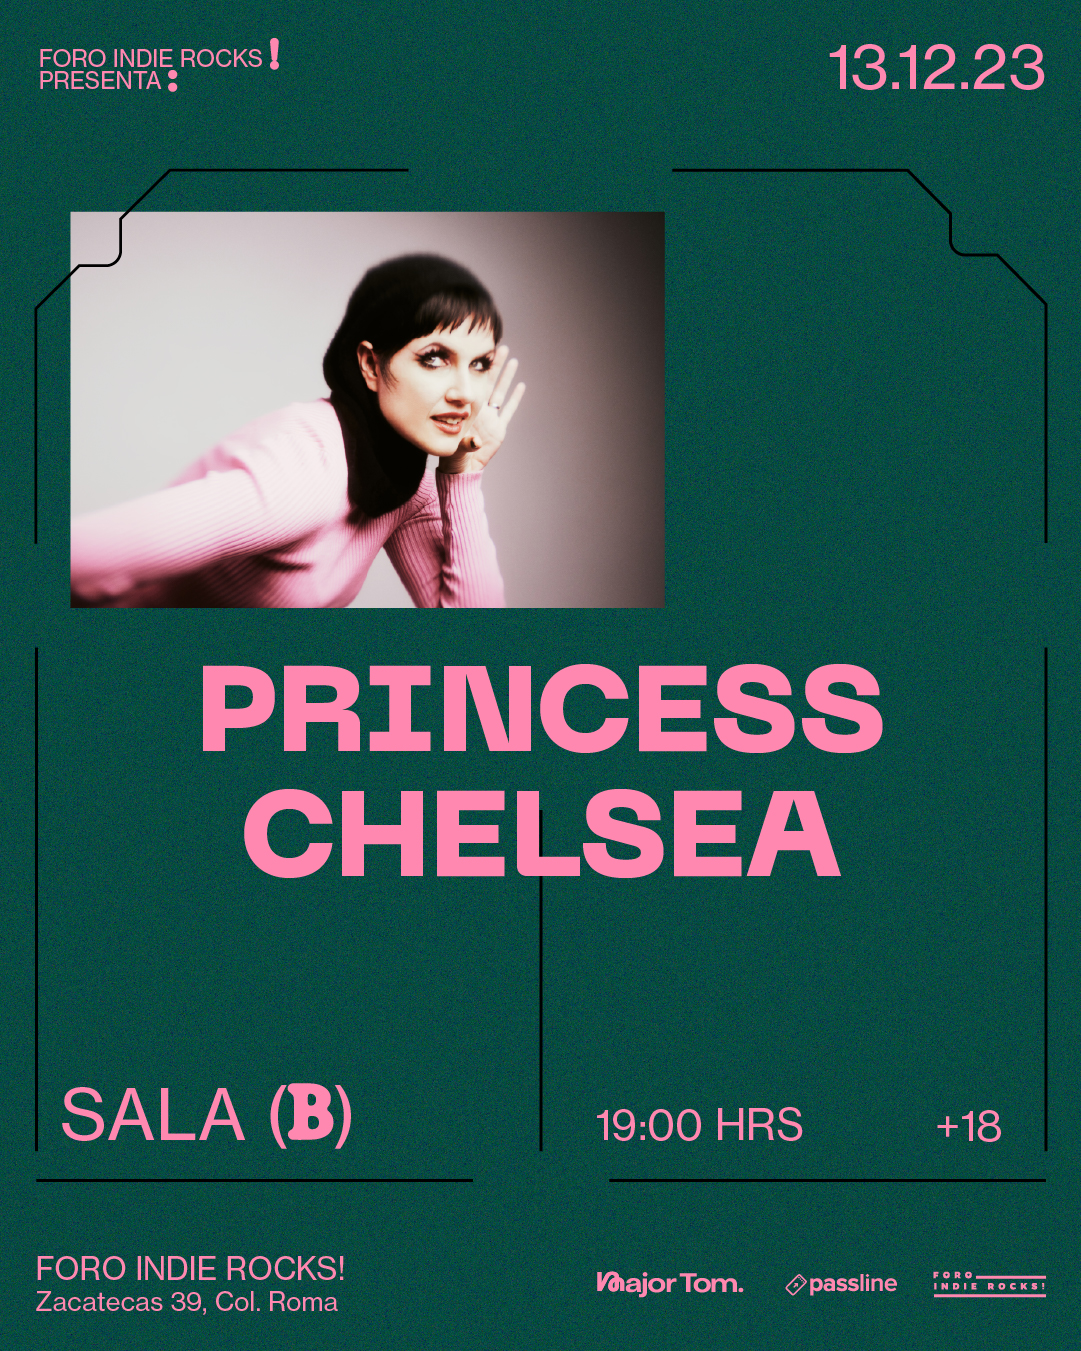 Princess_Chelsea_FIR